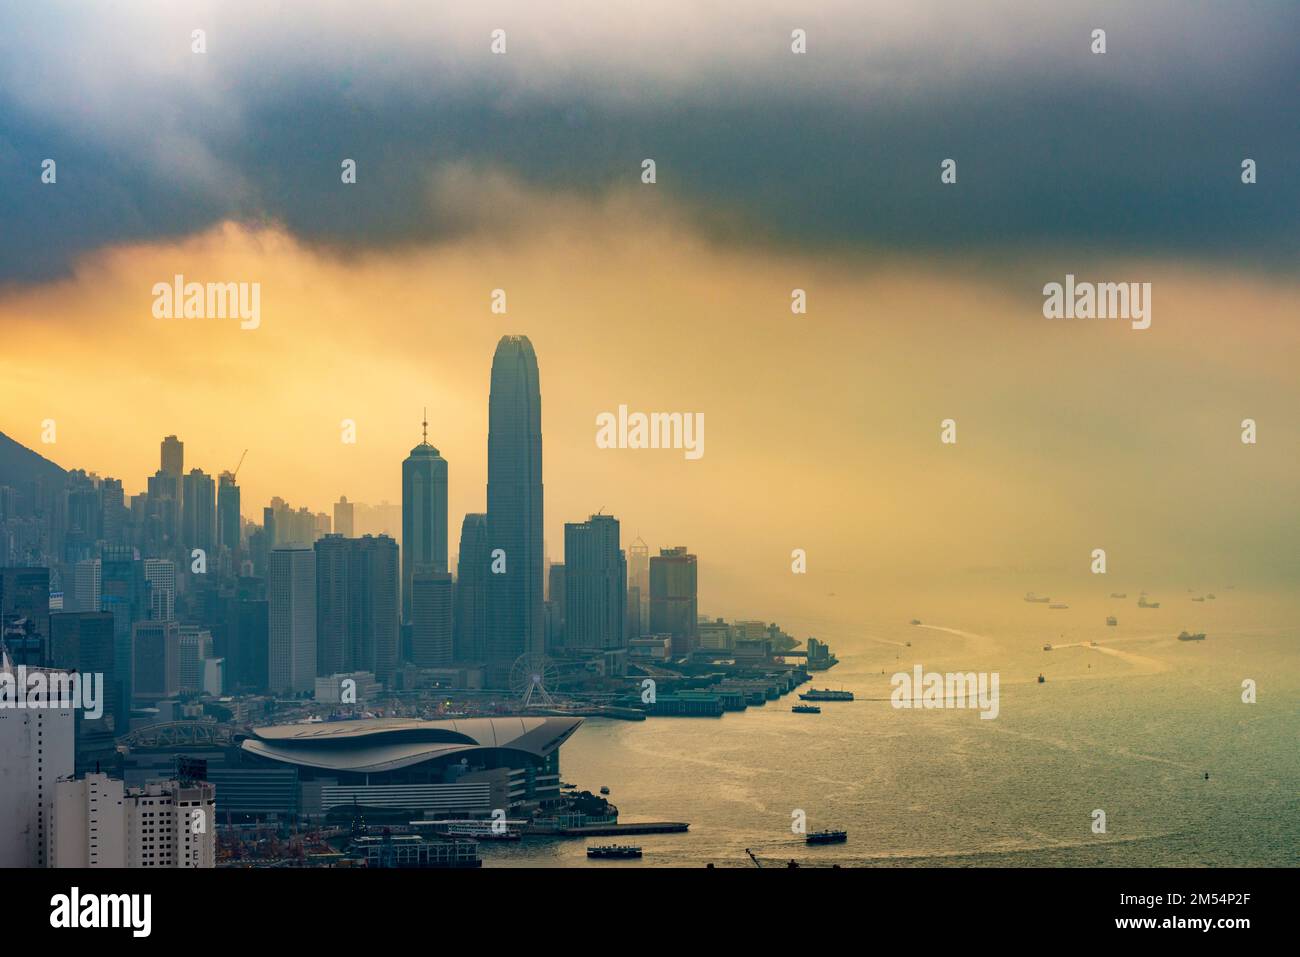 Une tempête imminente se combine avec le smog pour envelopper les gratte-ciel de l'île de Hong Kong, 2016 Banque D'Images